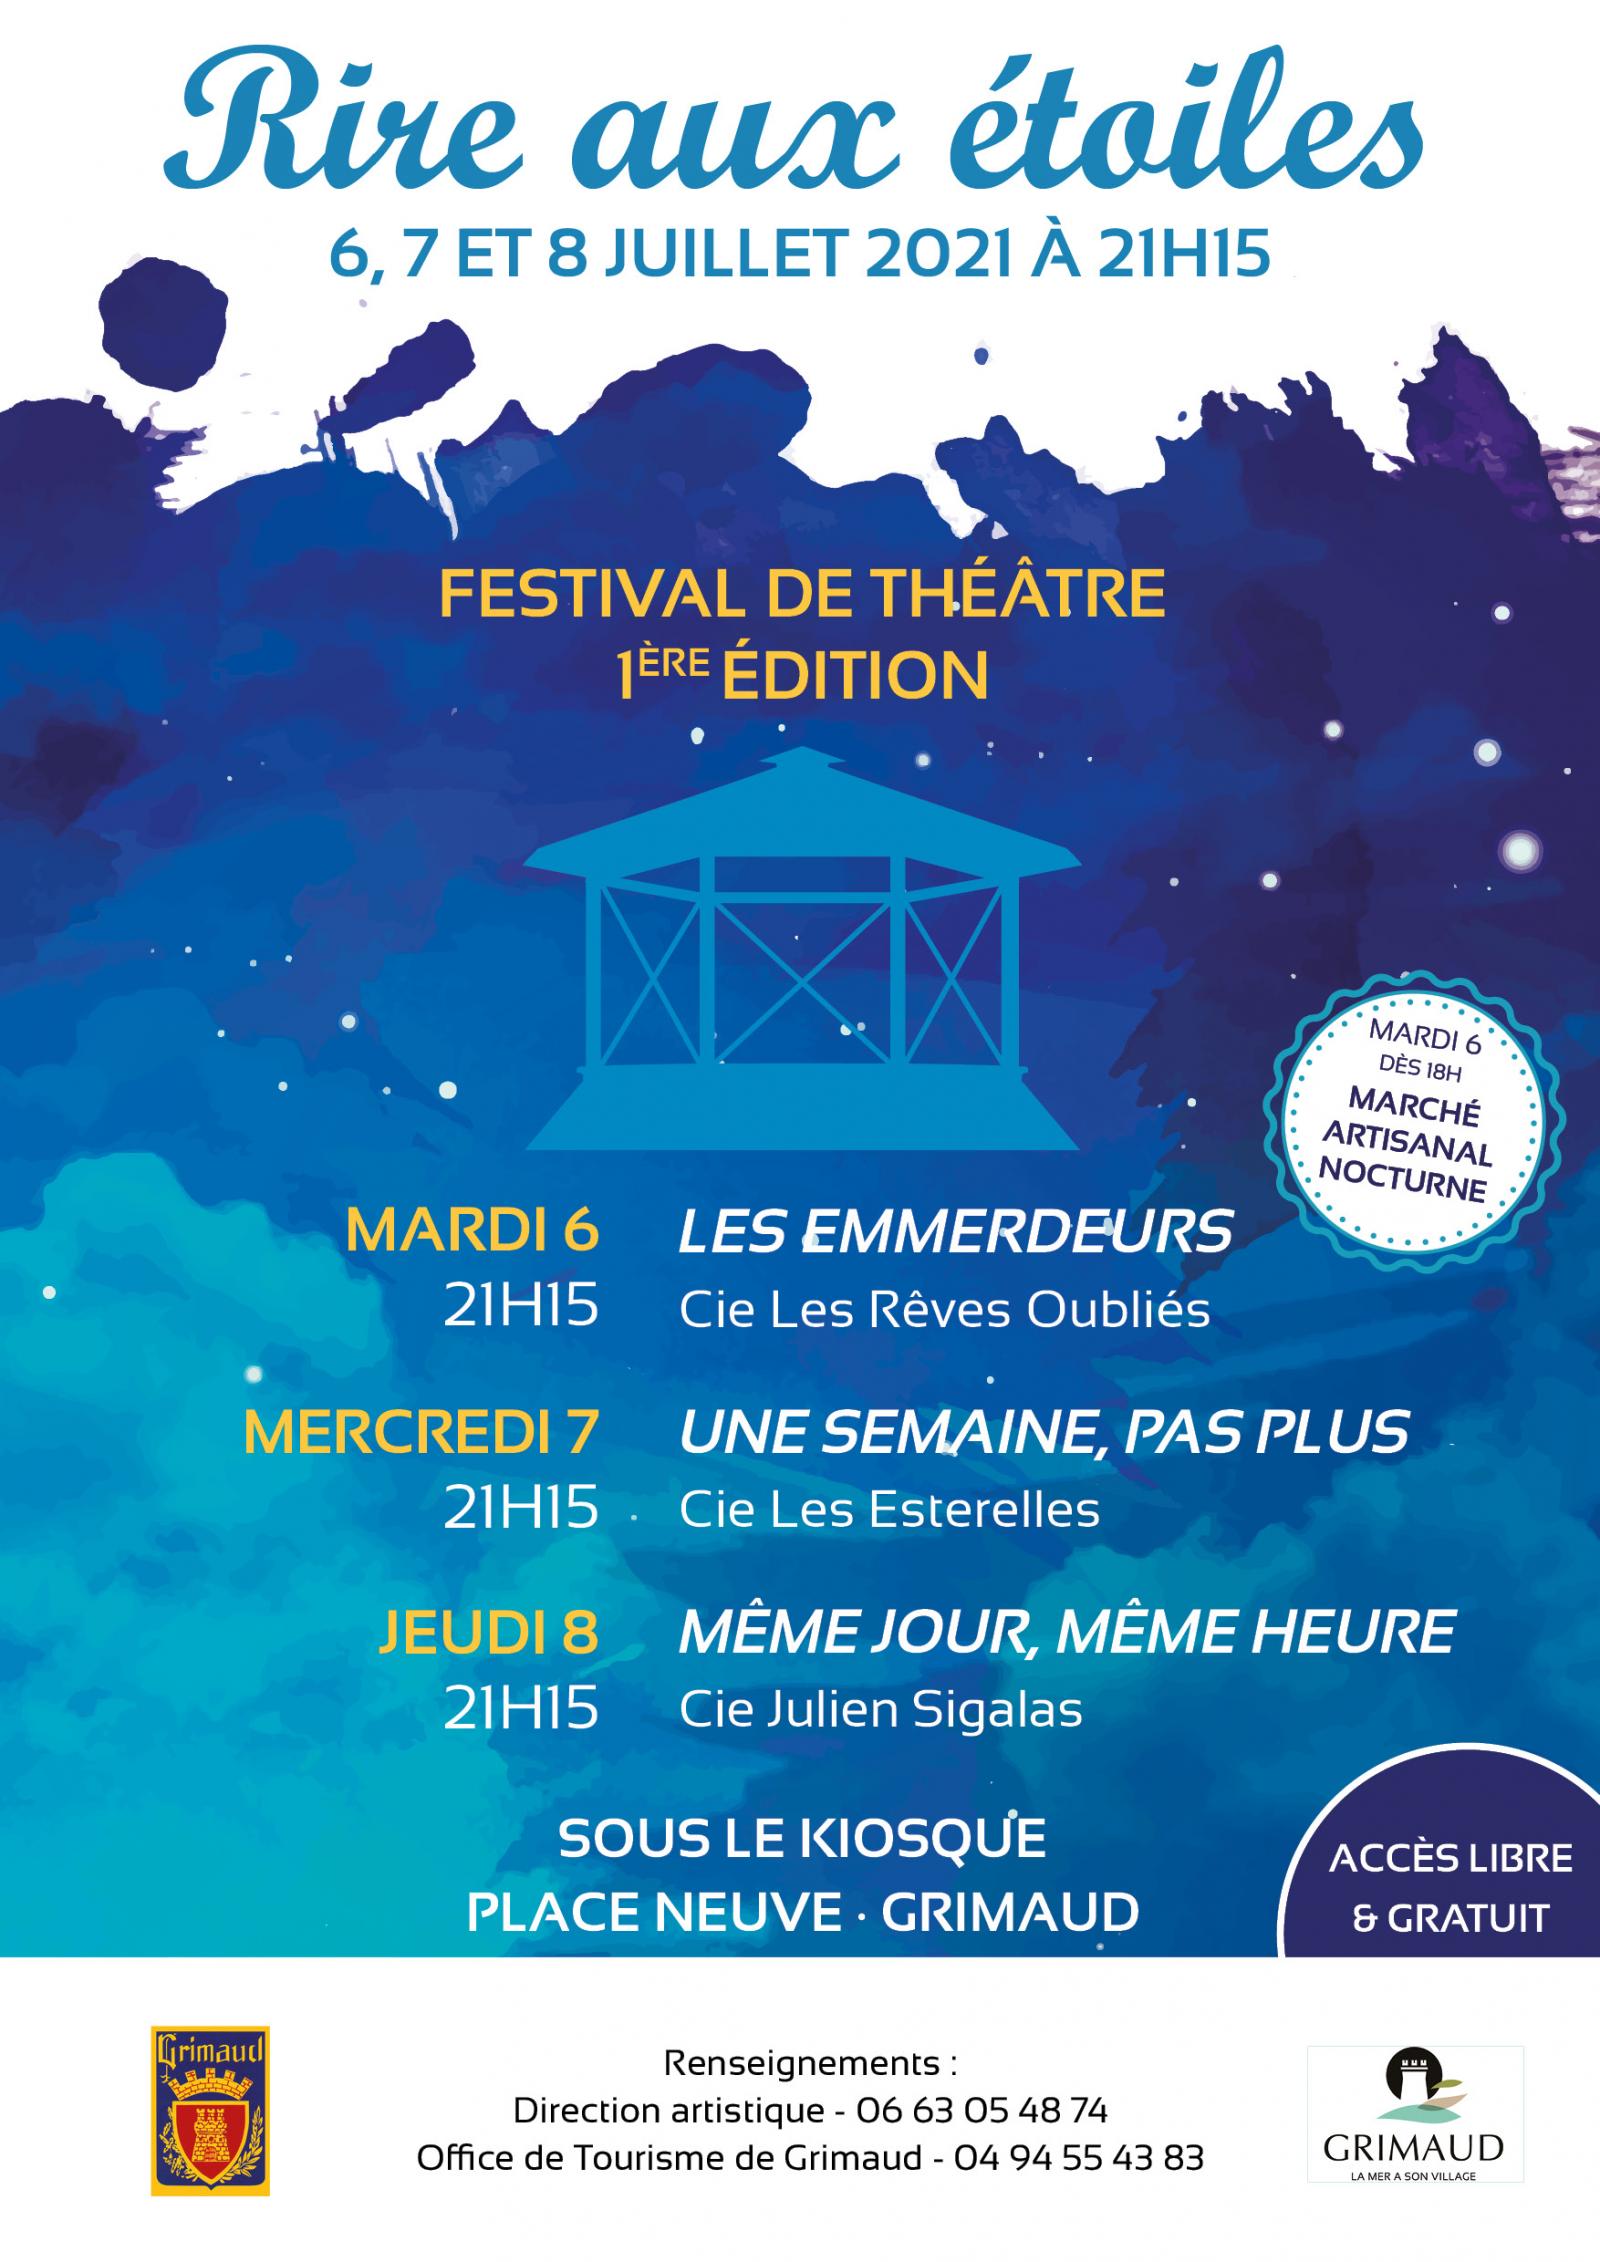 6, 7 et 8 juillet 2021 : Festival de théâtre 